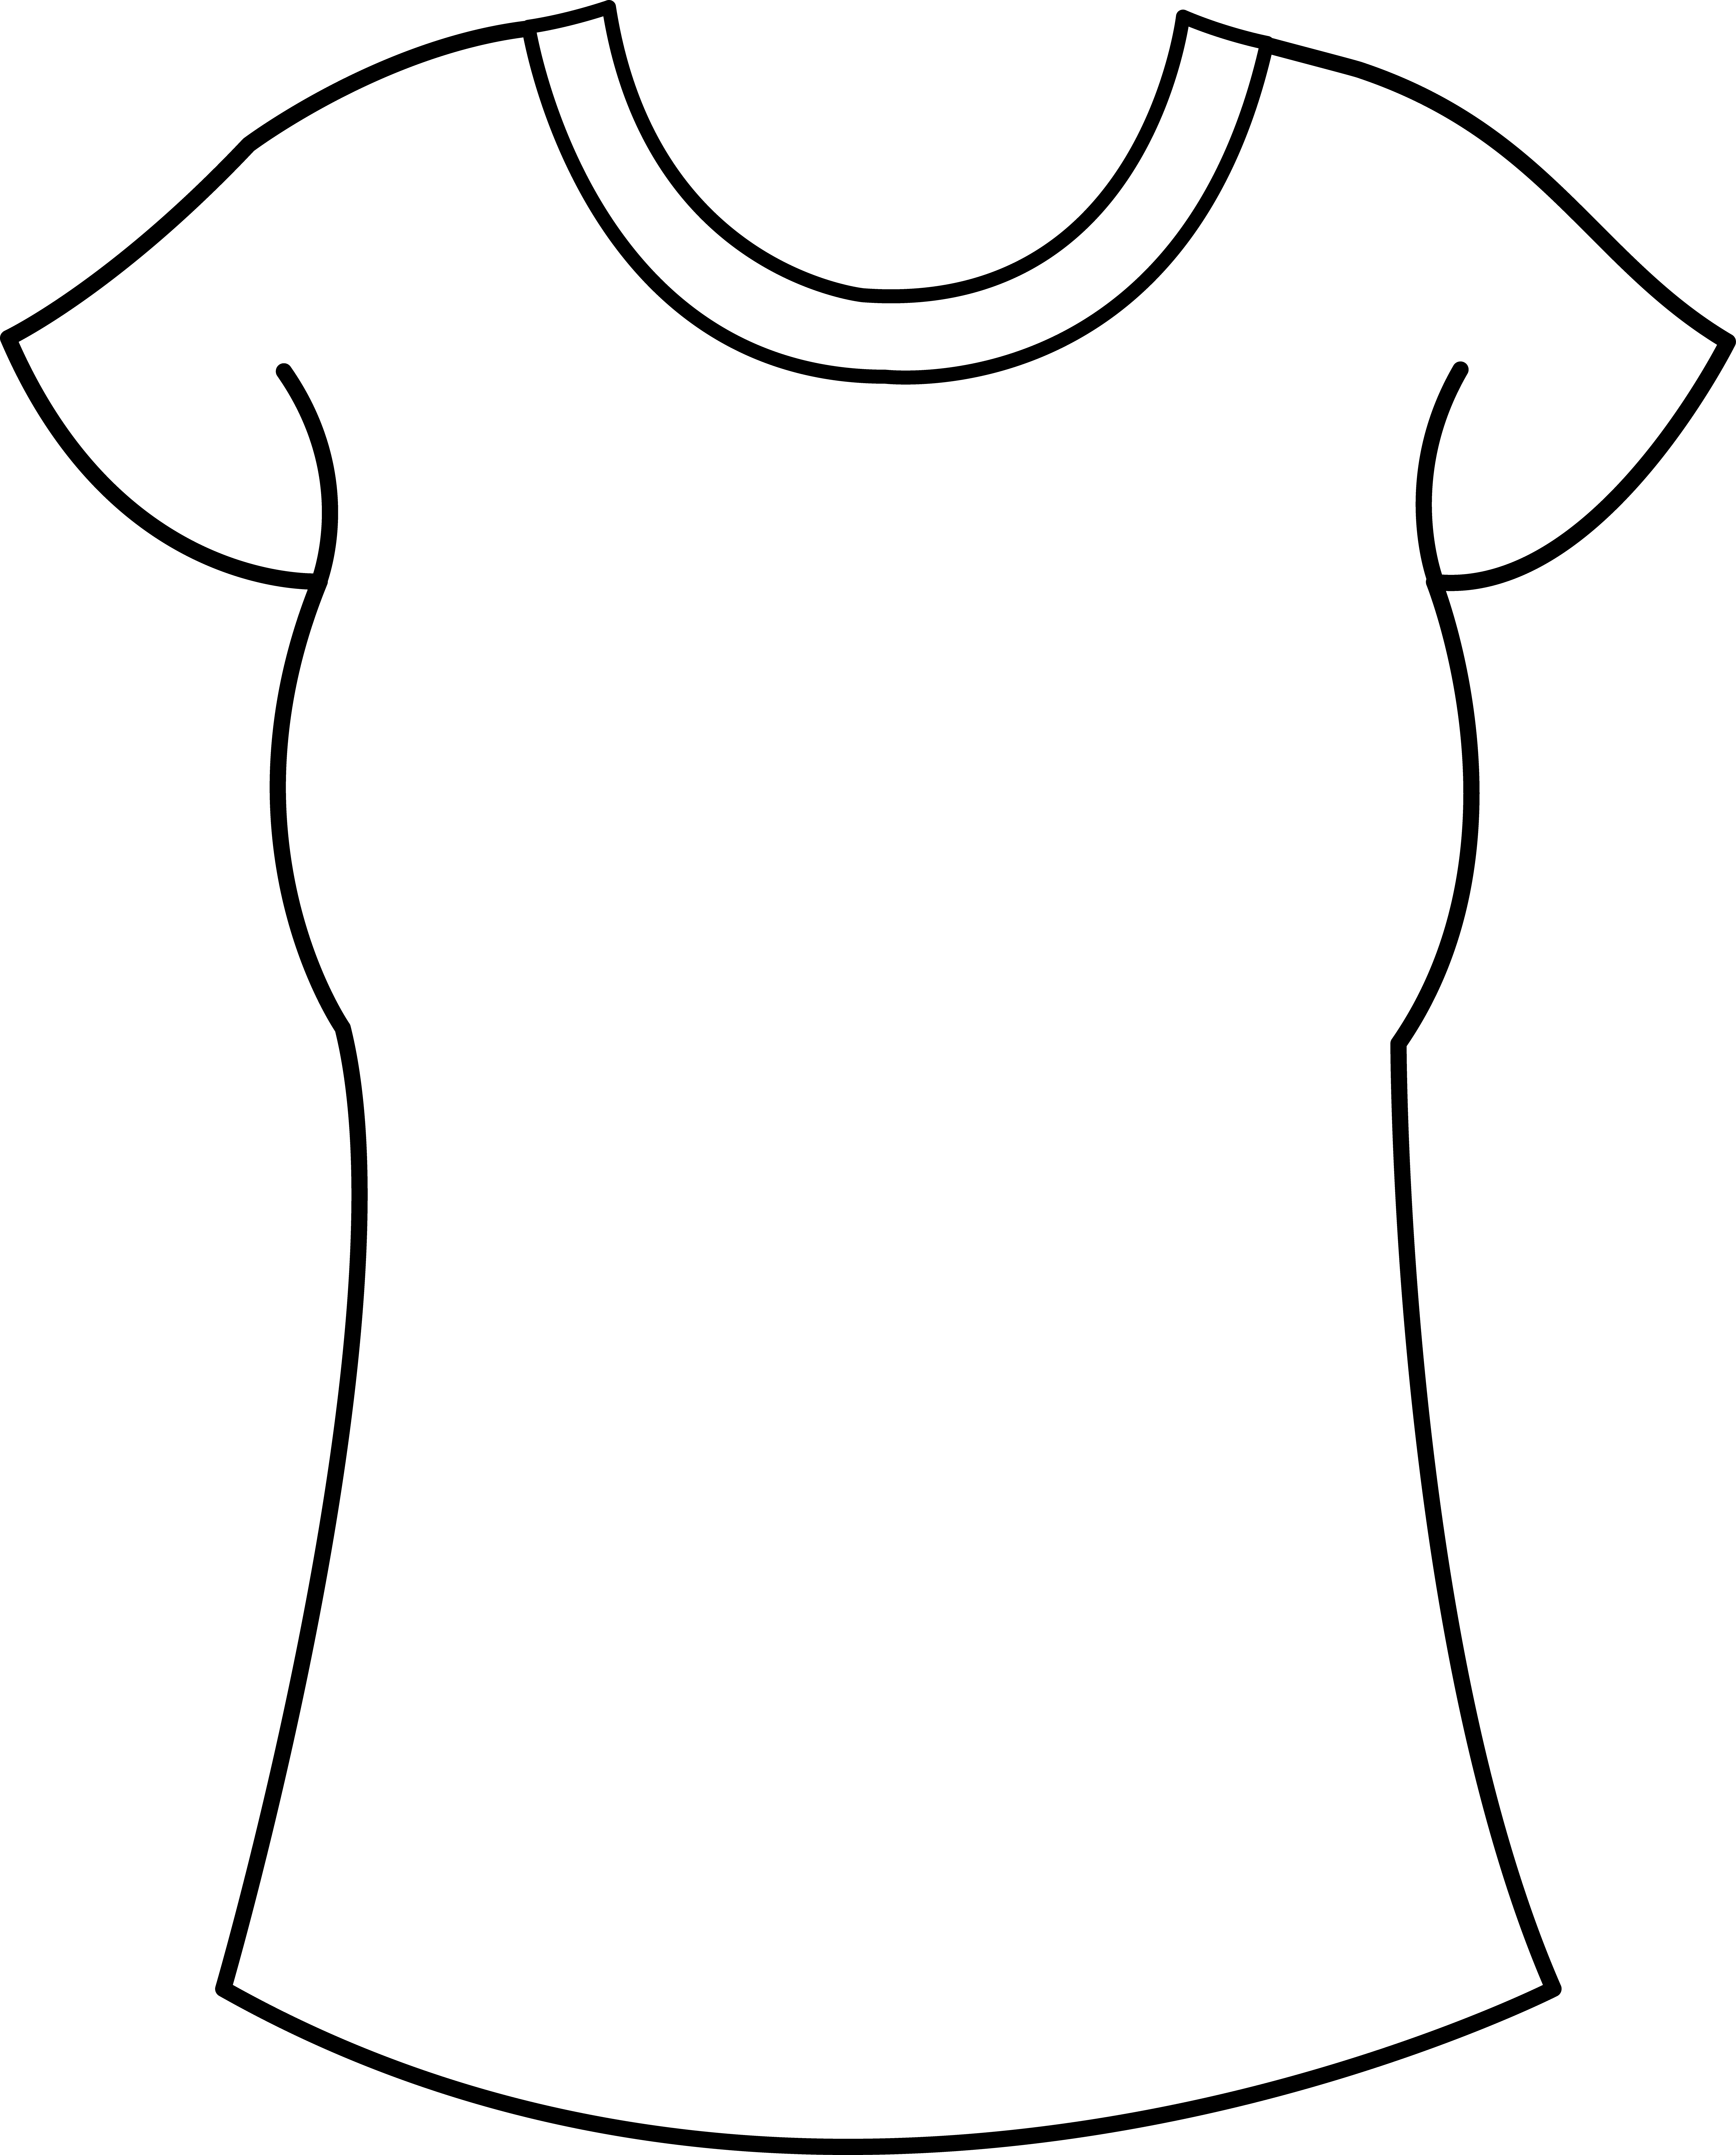 Best Photos of T-Shirt Template Clip Art - T-Shirt Outline ...